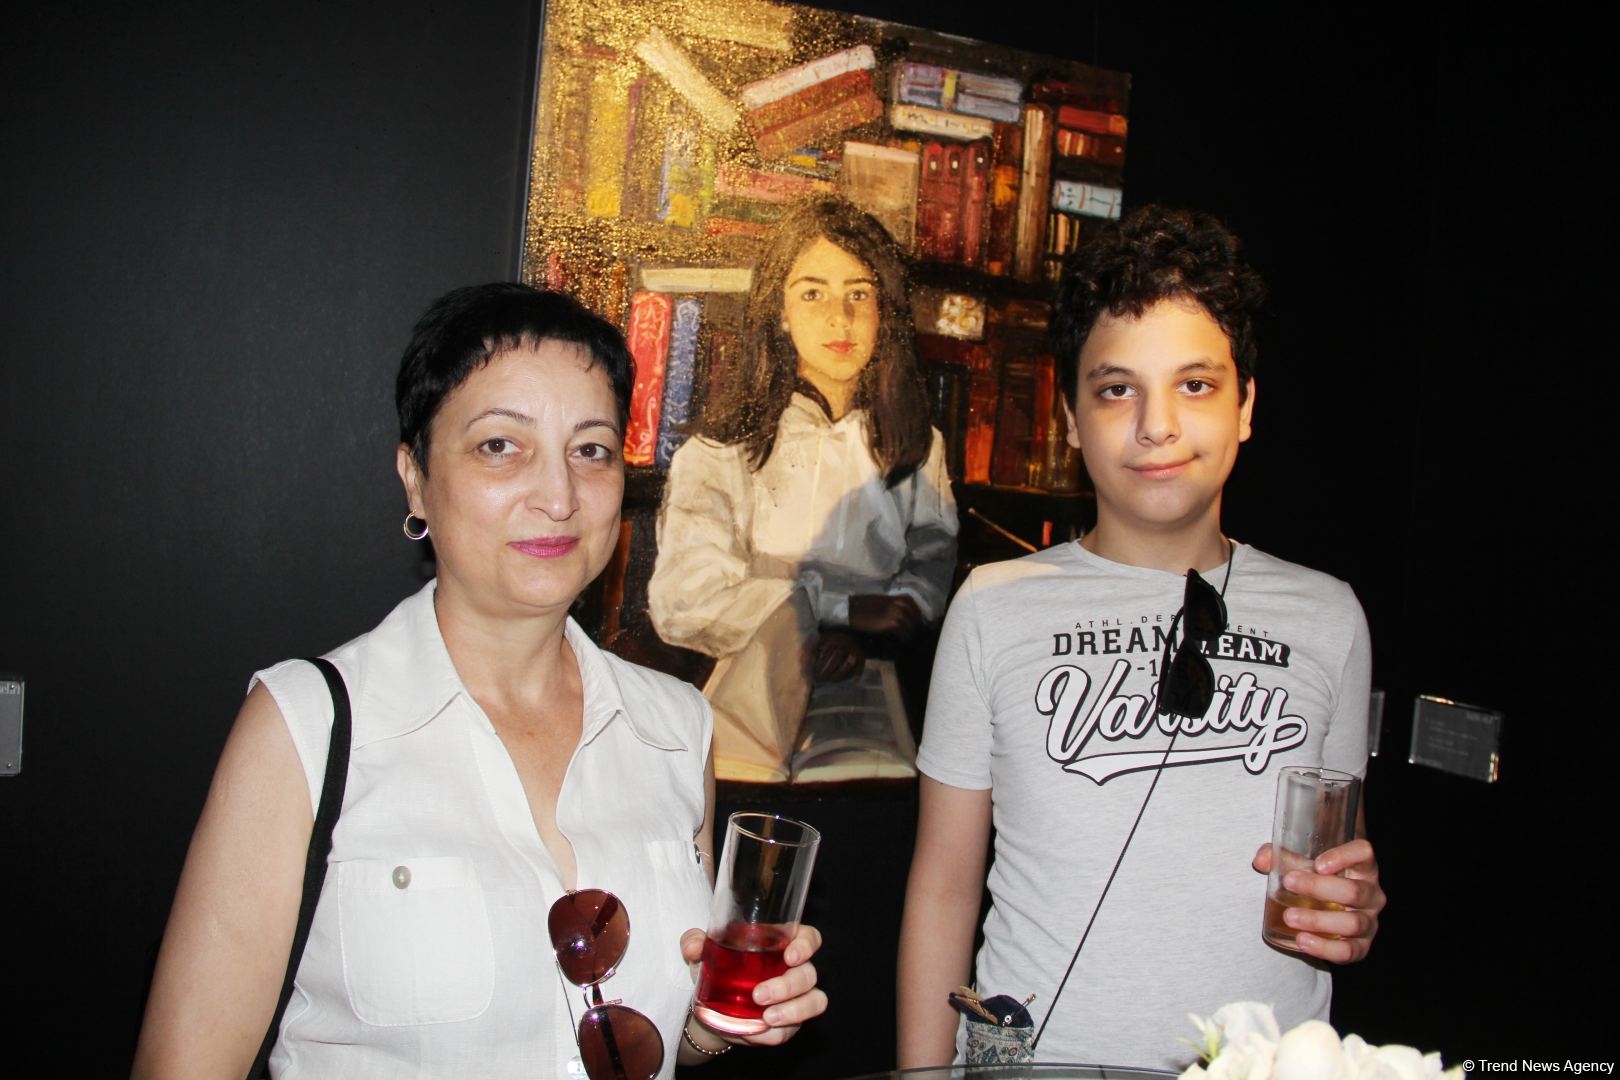 В QGallery открылась выставка Фарах Гаджизаде "Таинство света" (ФОТО)